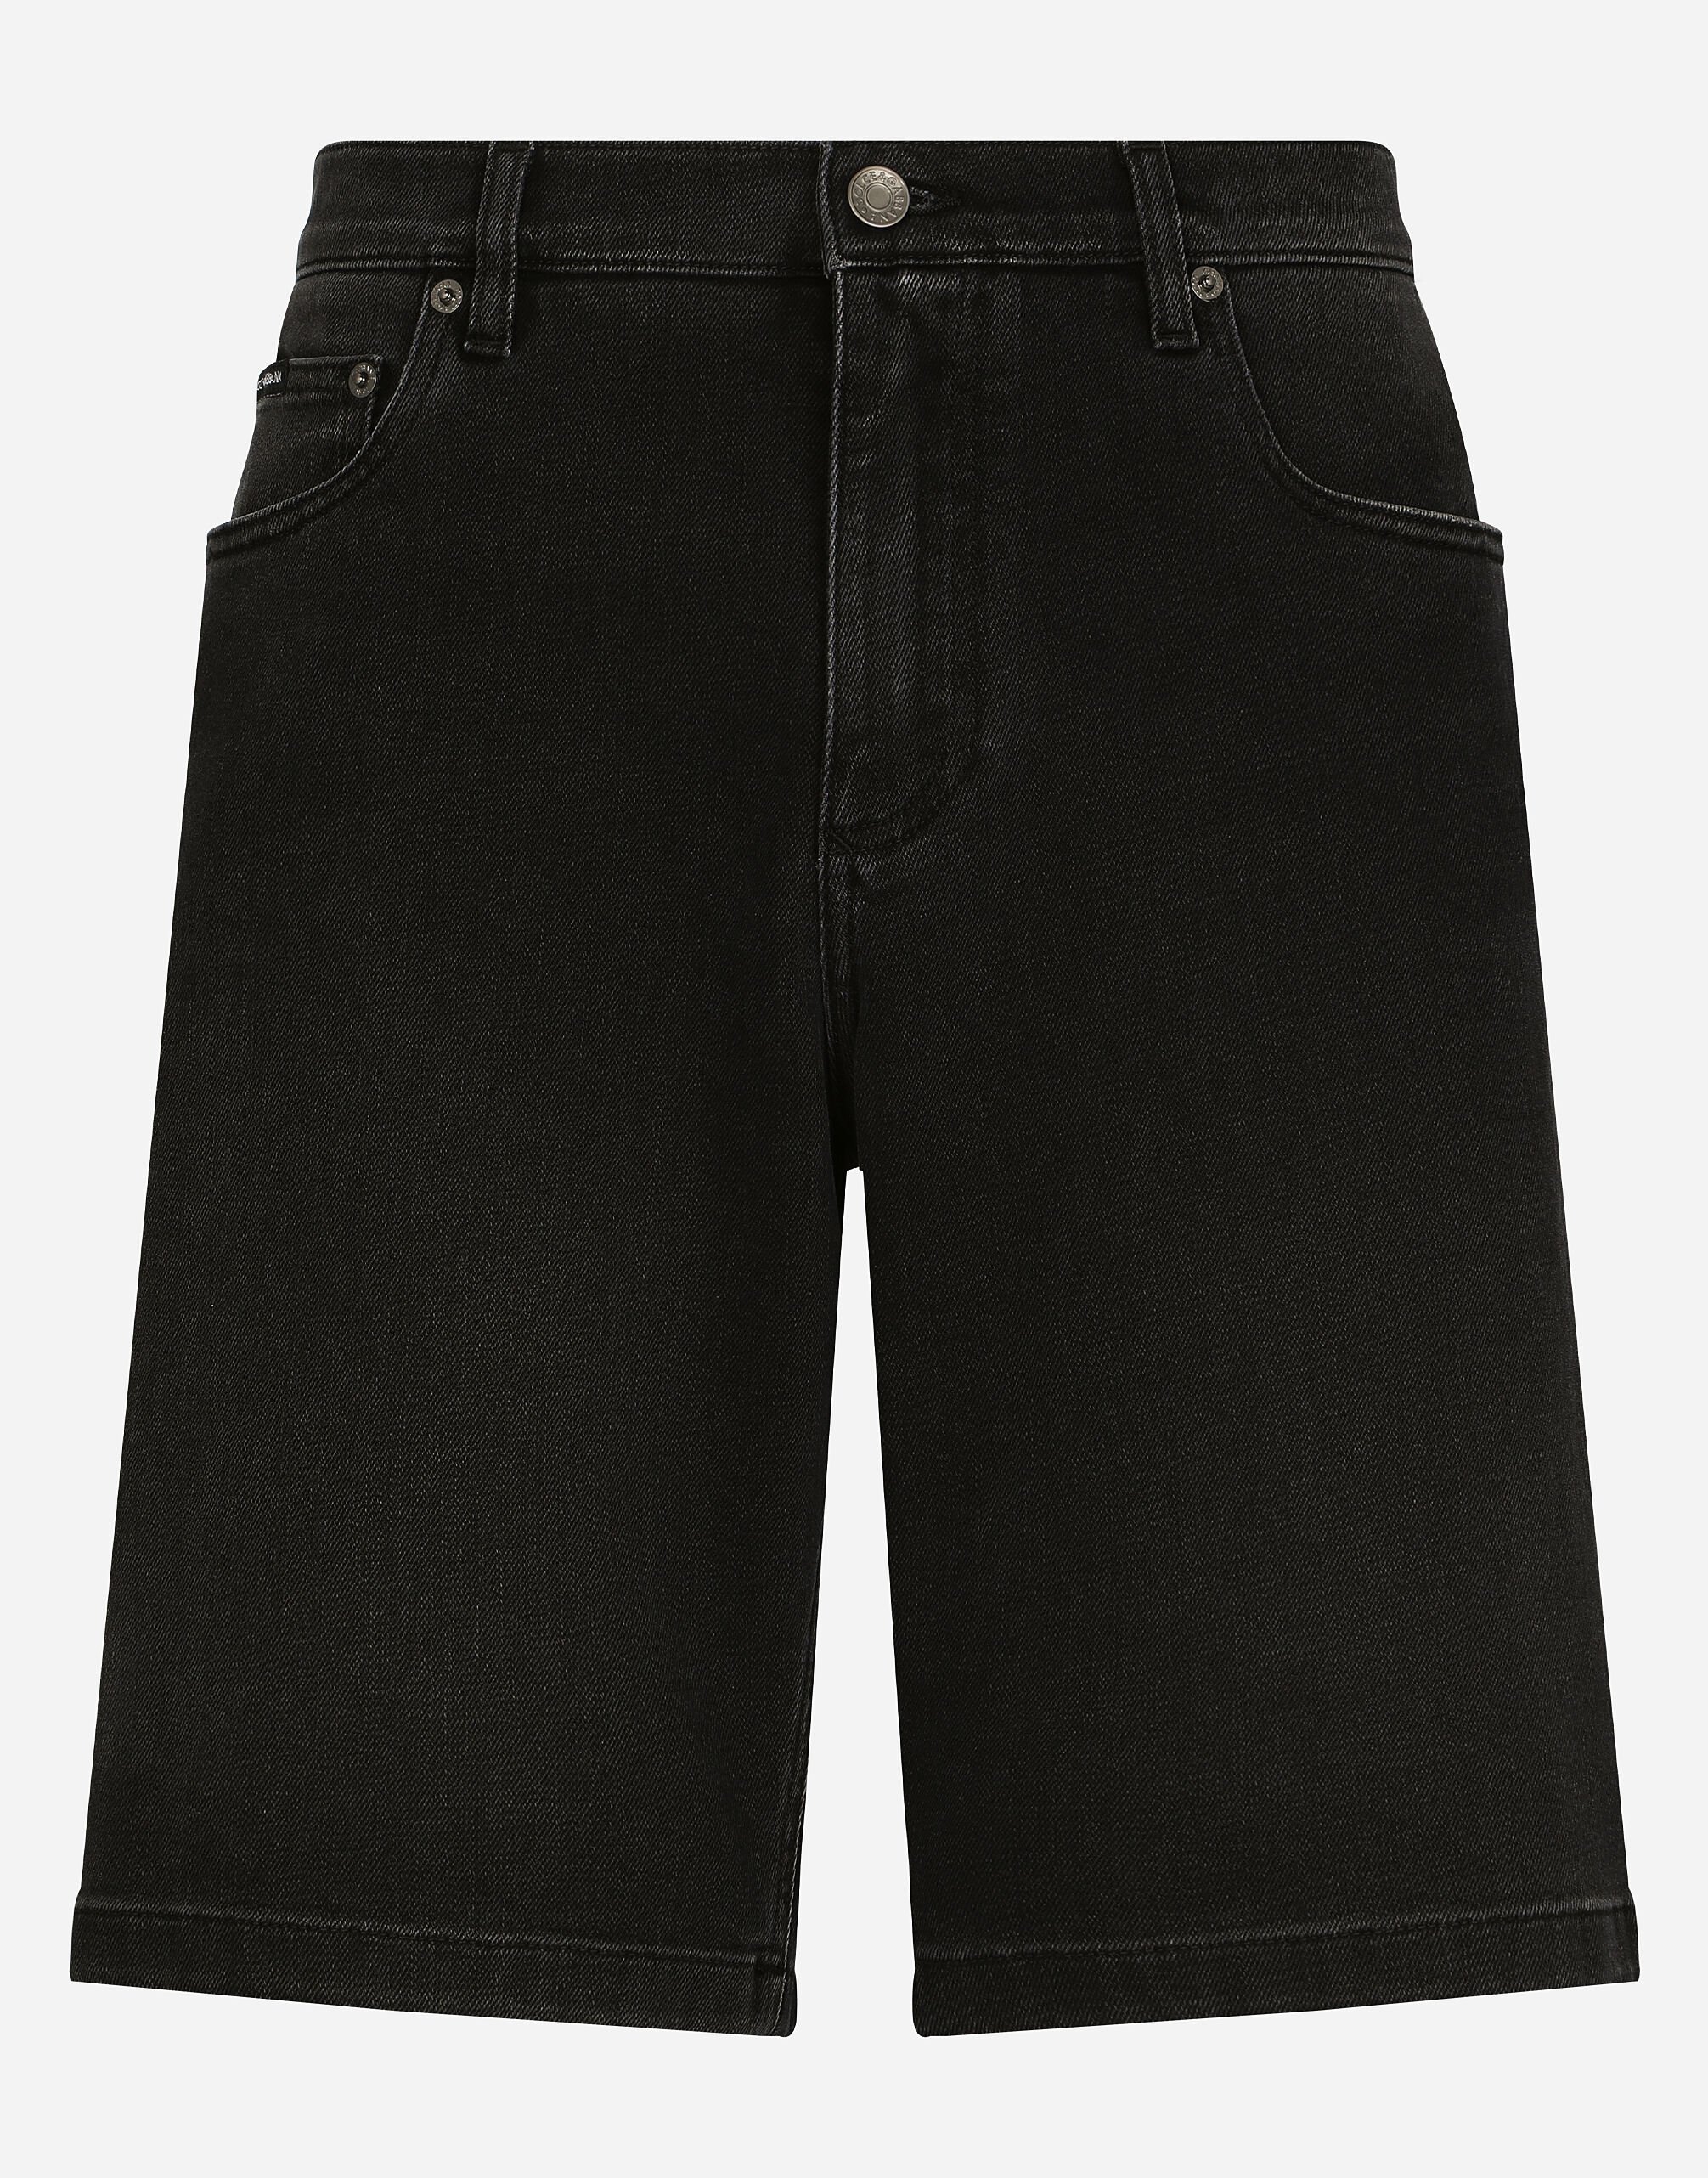 Dolce & Gabbana Jeans-Bermudas Stretch grau gewaschen Schwarz VG4390VP187